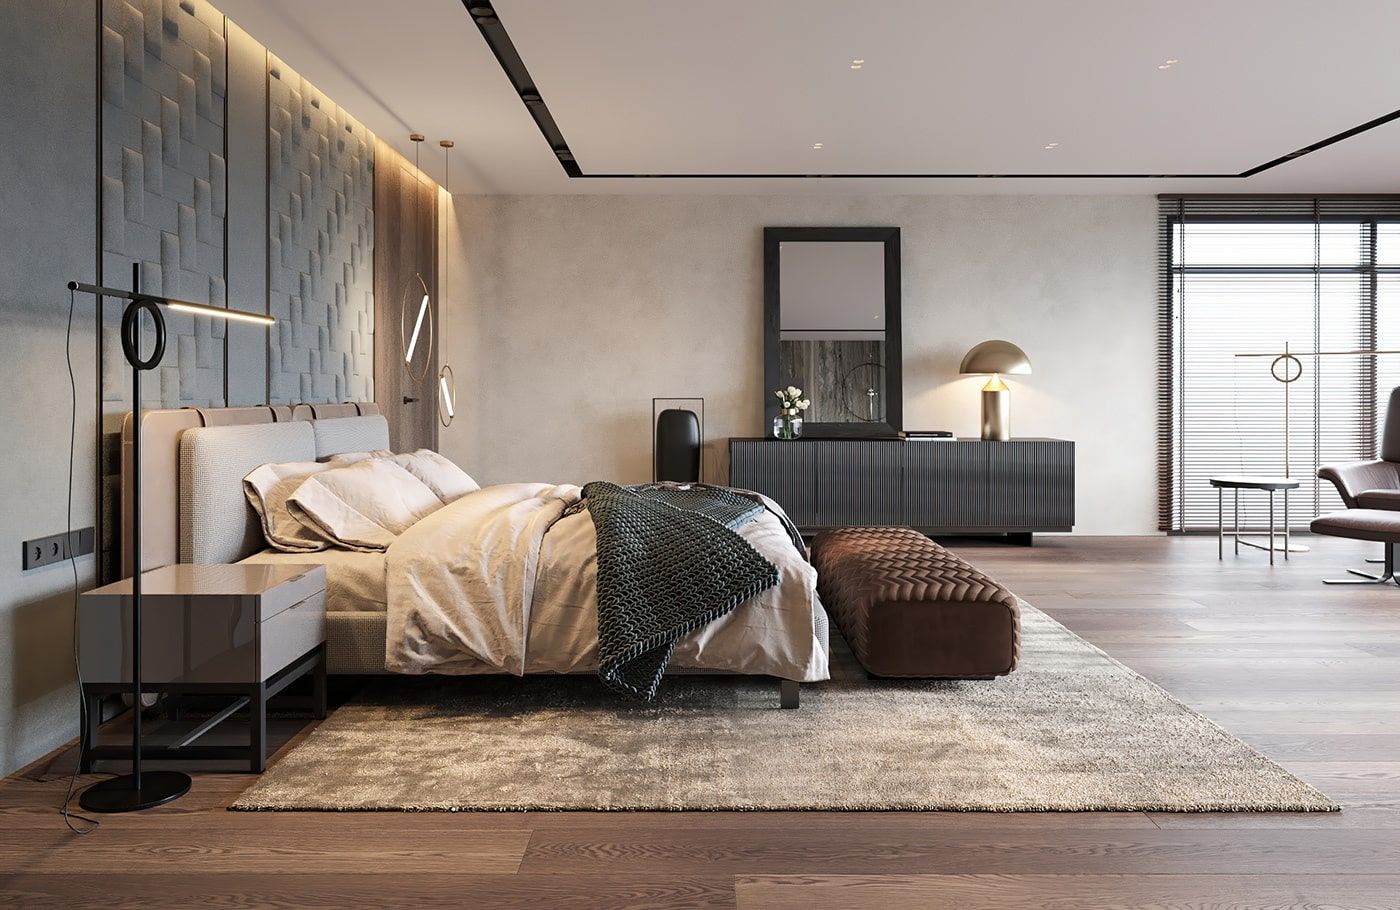 Thiết kế nội thất nhà phố - Phòng ngủ mang lại cảm giác thư giãn, thoải mái